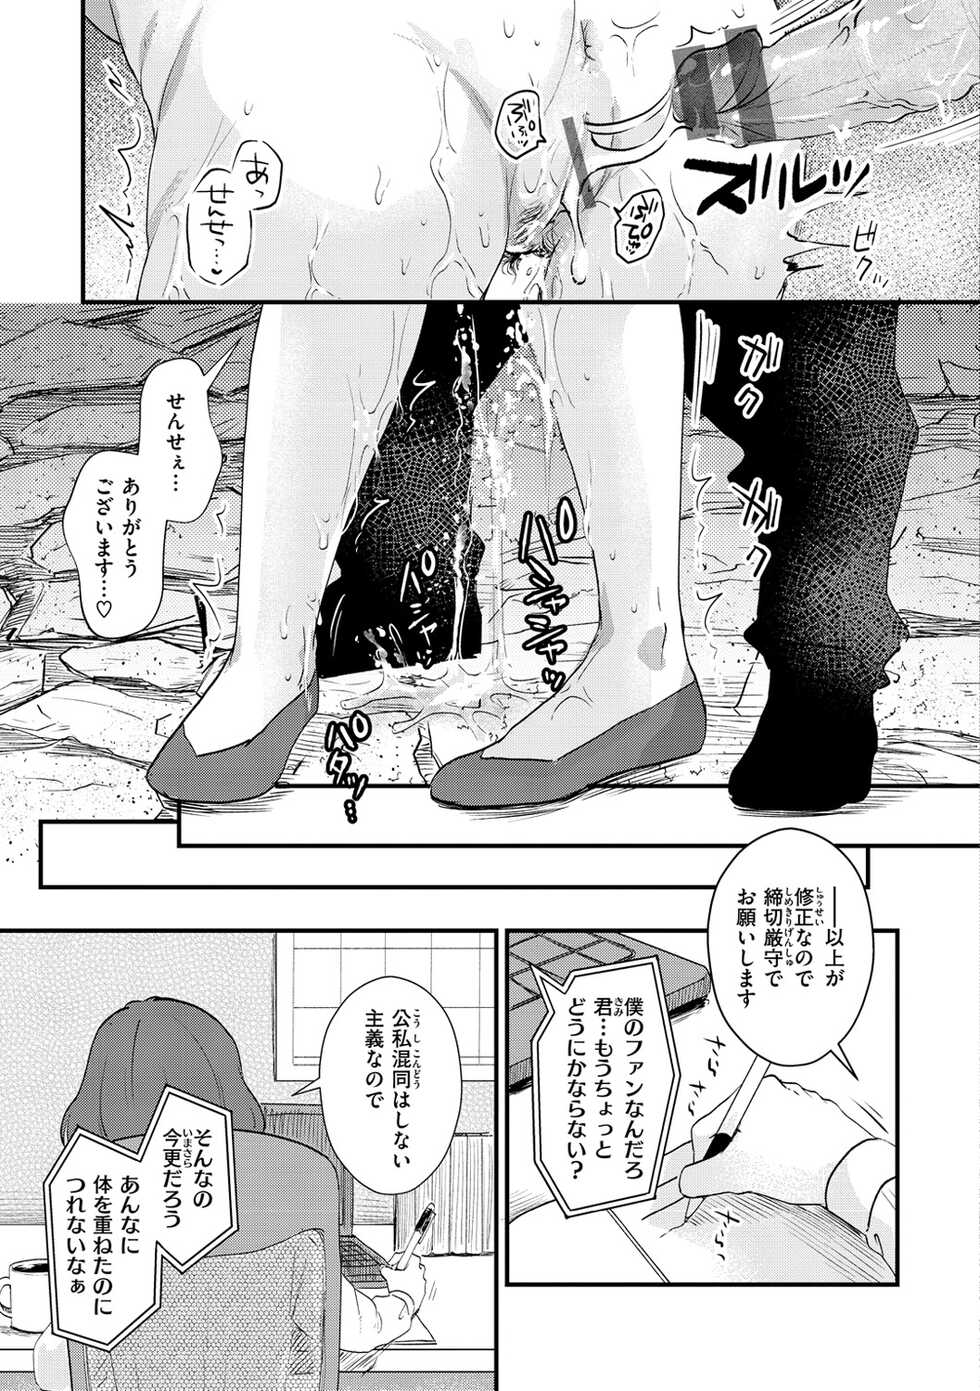 [Enoki] Kekkyoku wa Mesu nano de - She's Just a Pussy. [Digital] - Page 23